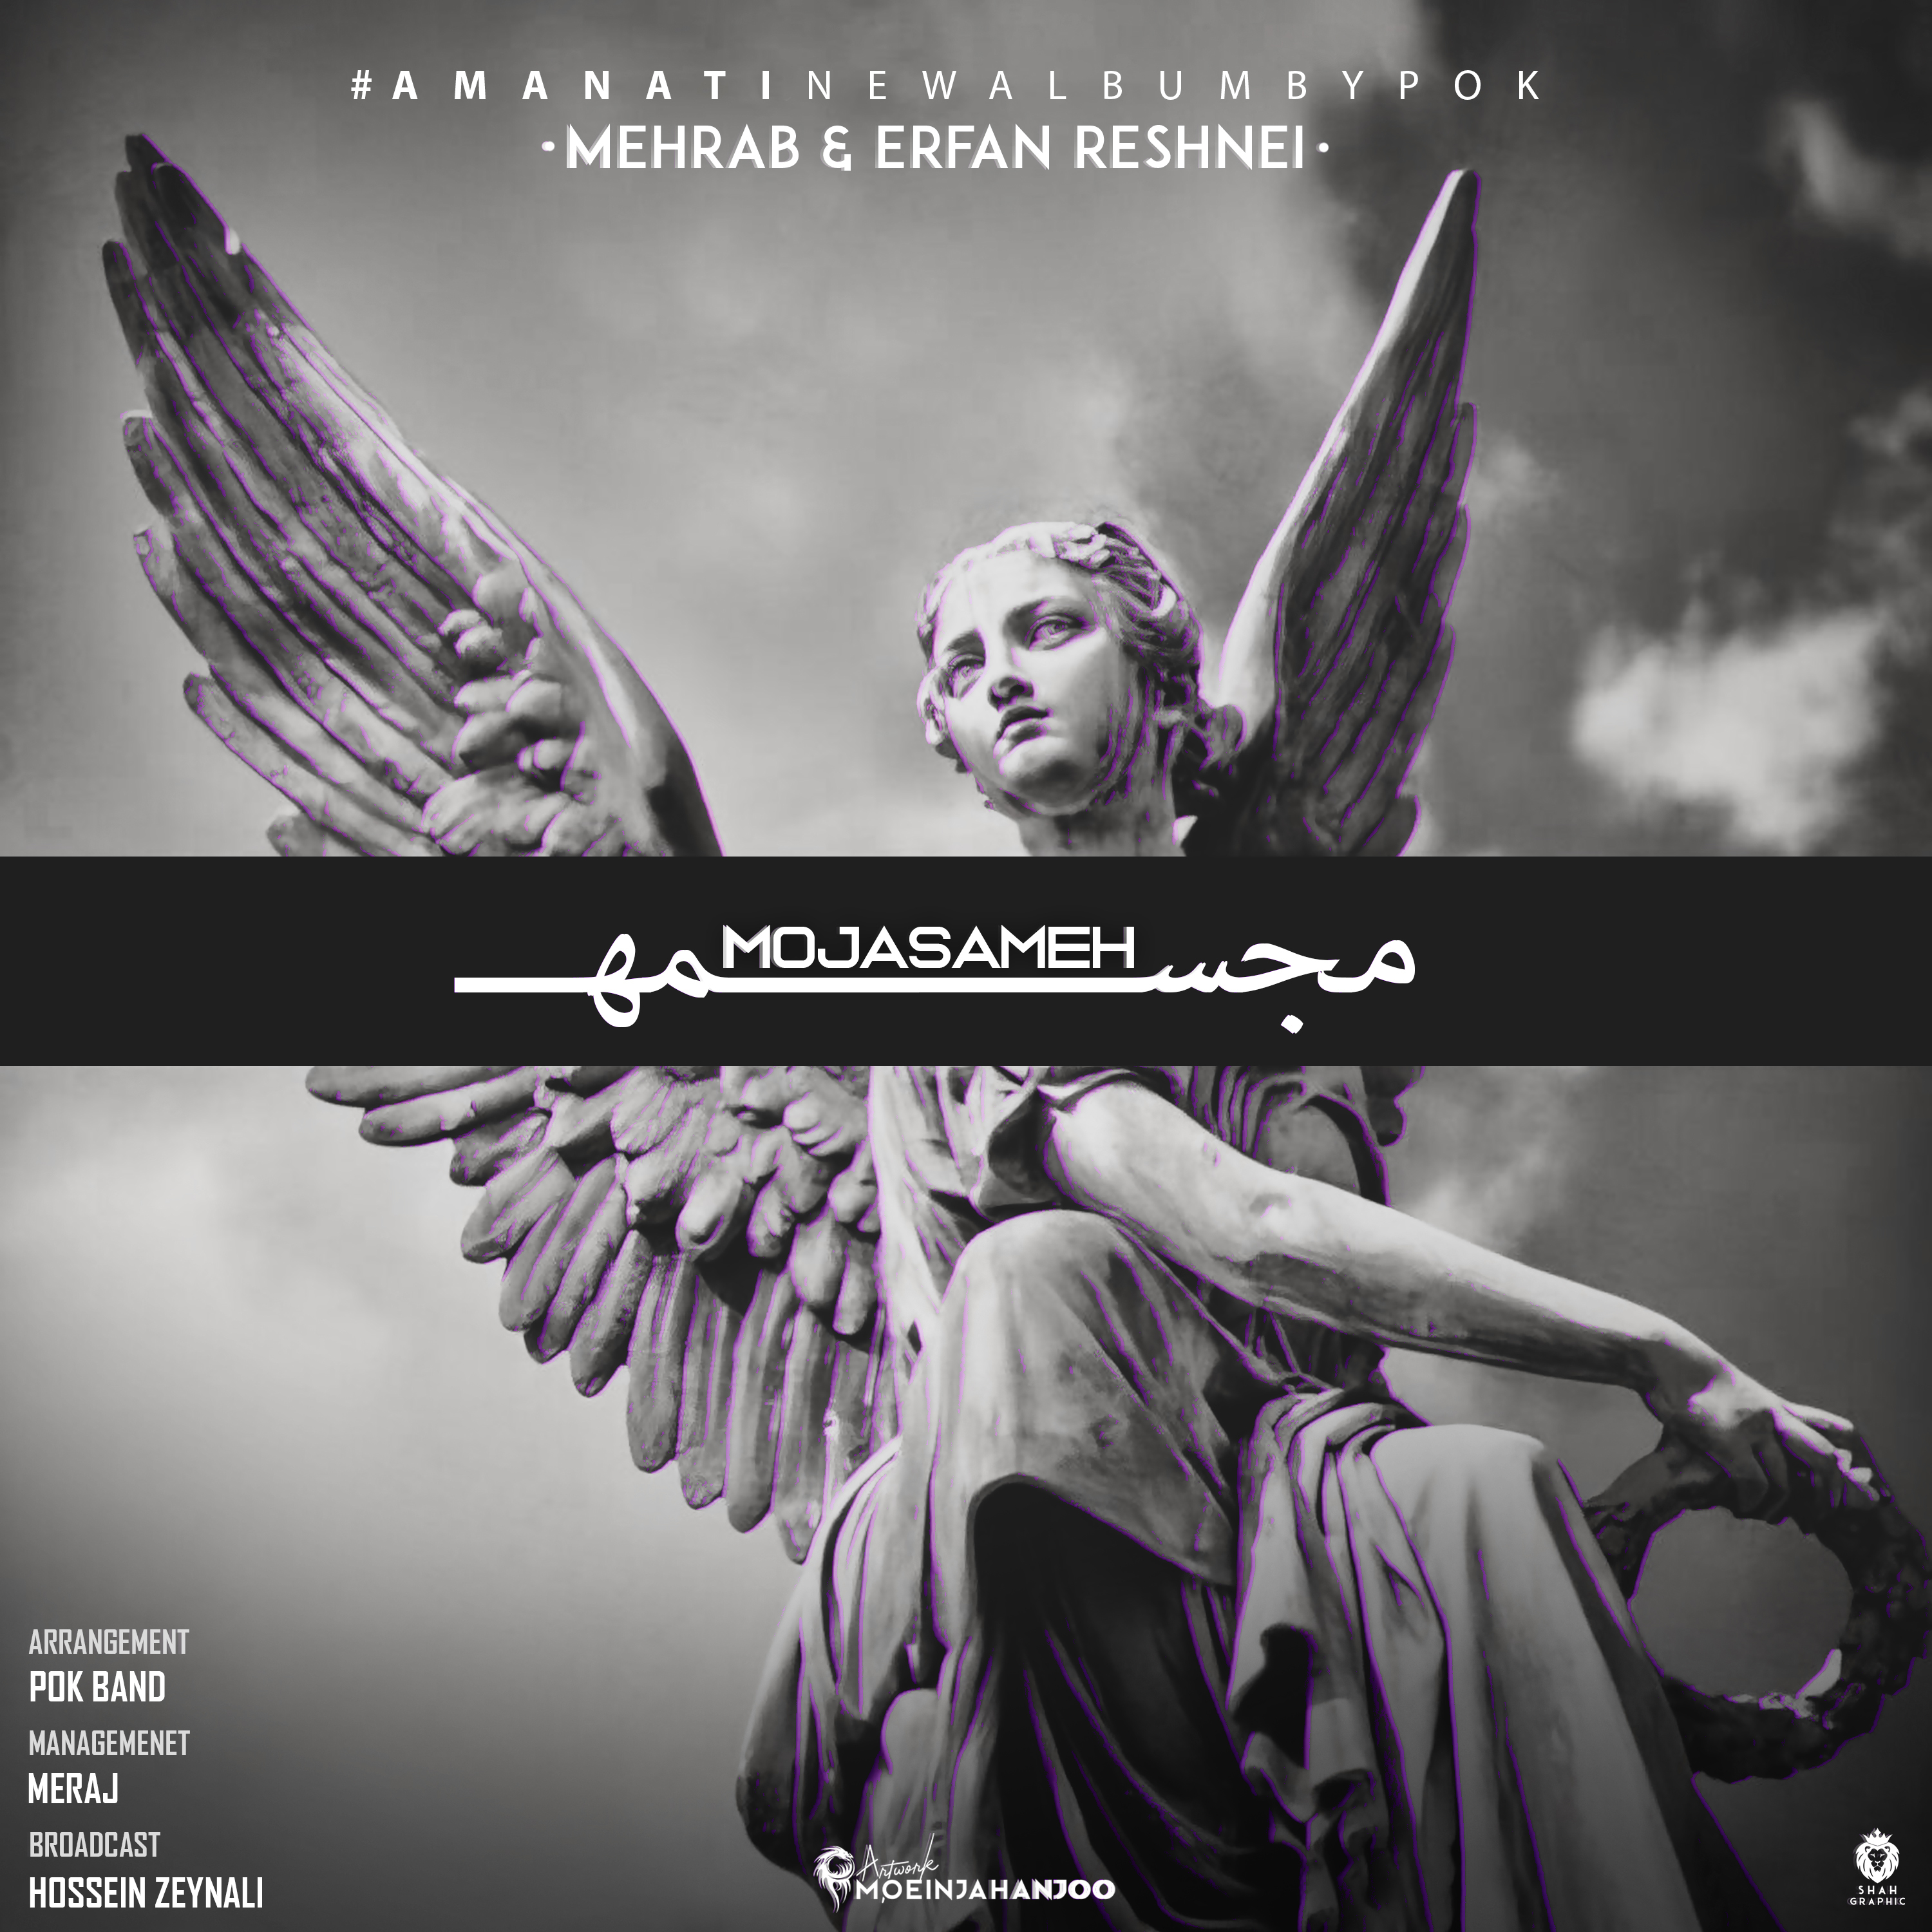  دانلود آهنگ جدید مهراب - مجسمه | Download New Music By Mehrab & Erfan Reshnei - Mojasame